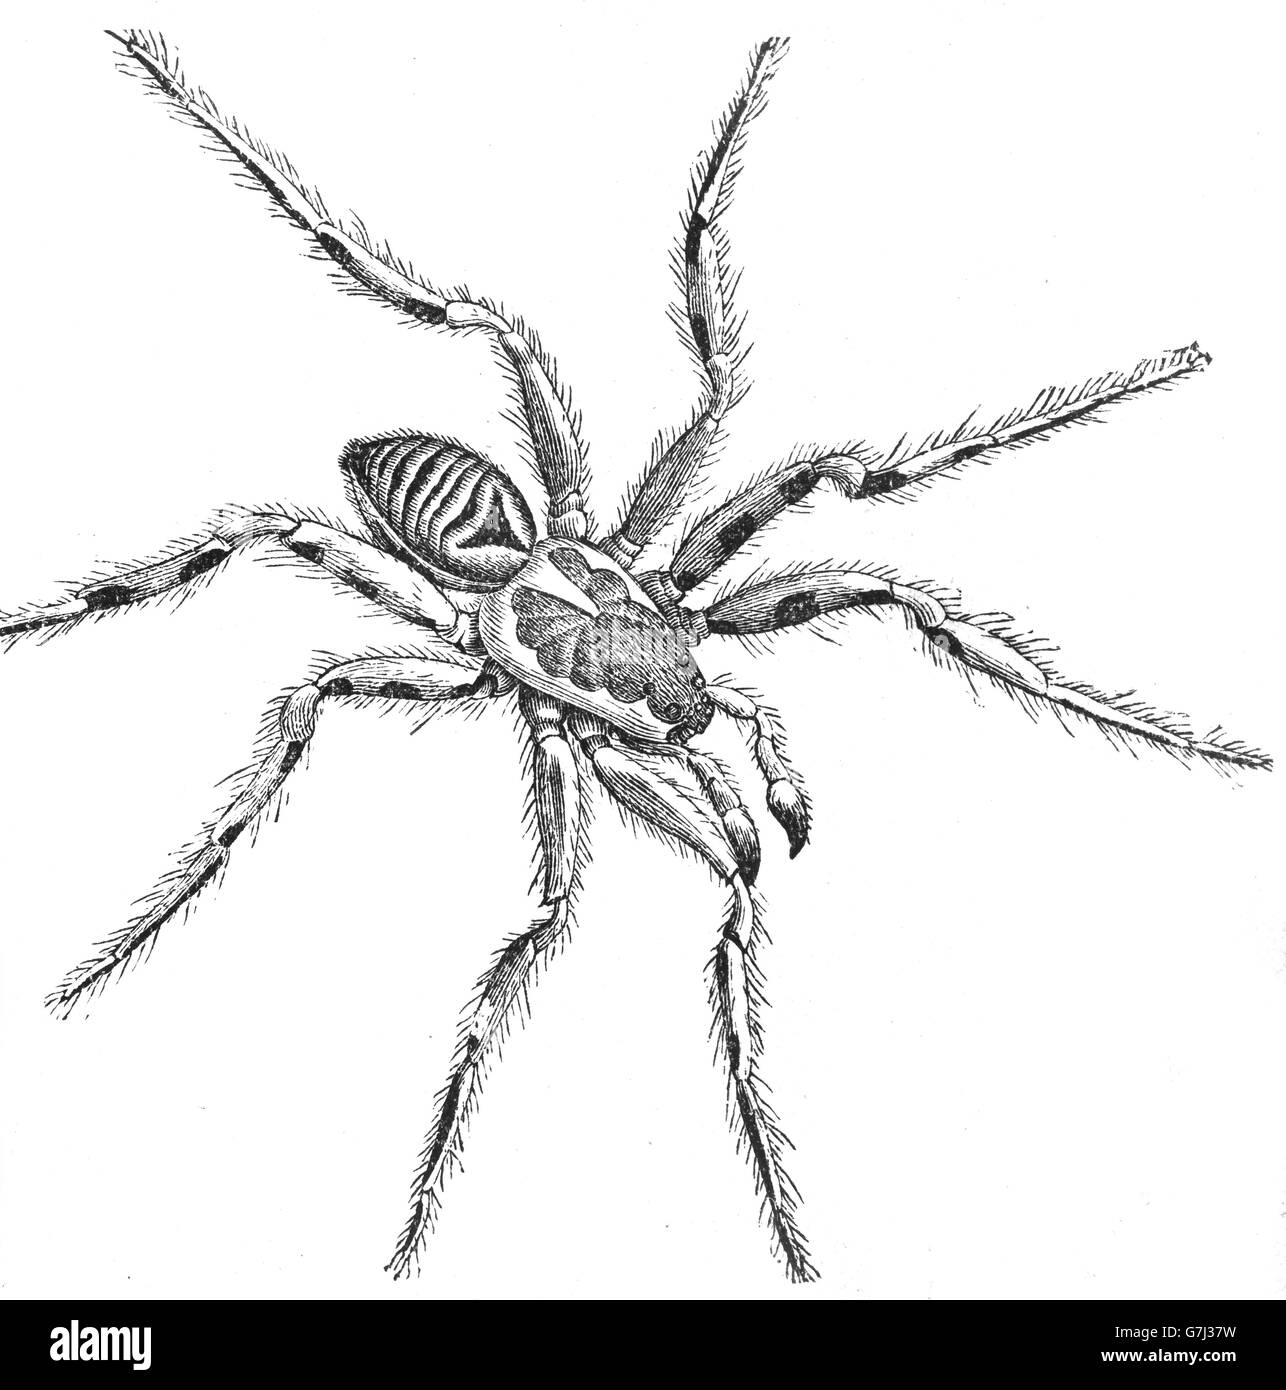 Vogelspinne, Arachnid, tritt, Spinne, Illustration aus Buch datiert 1904 Stockfoto